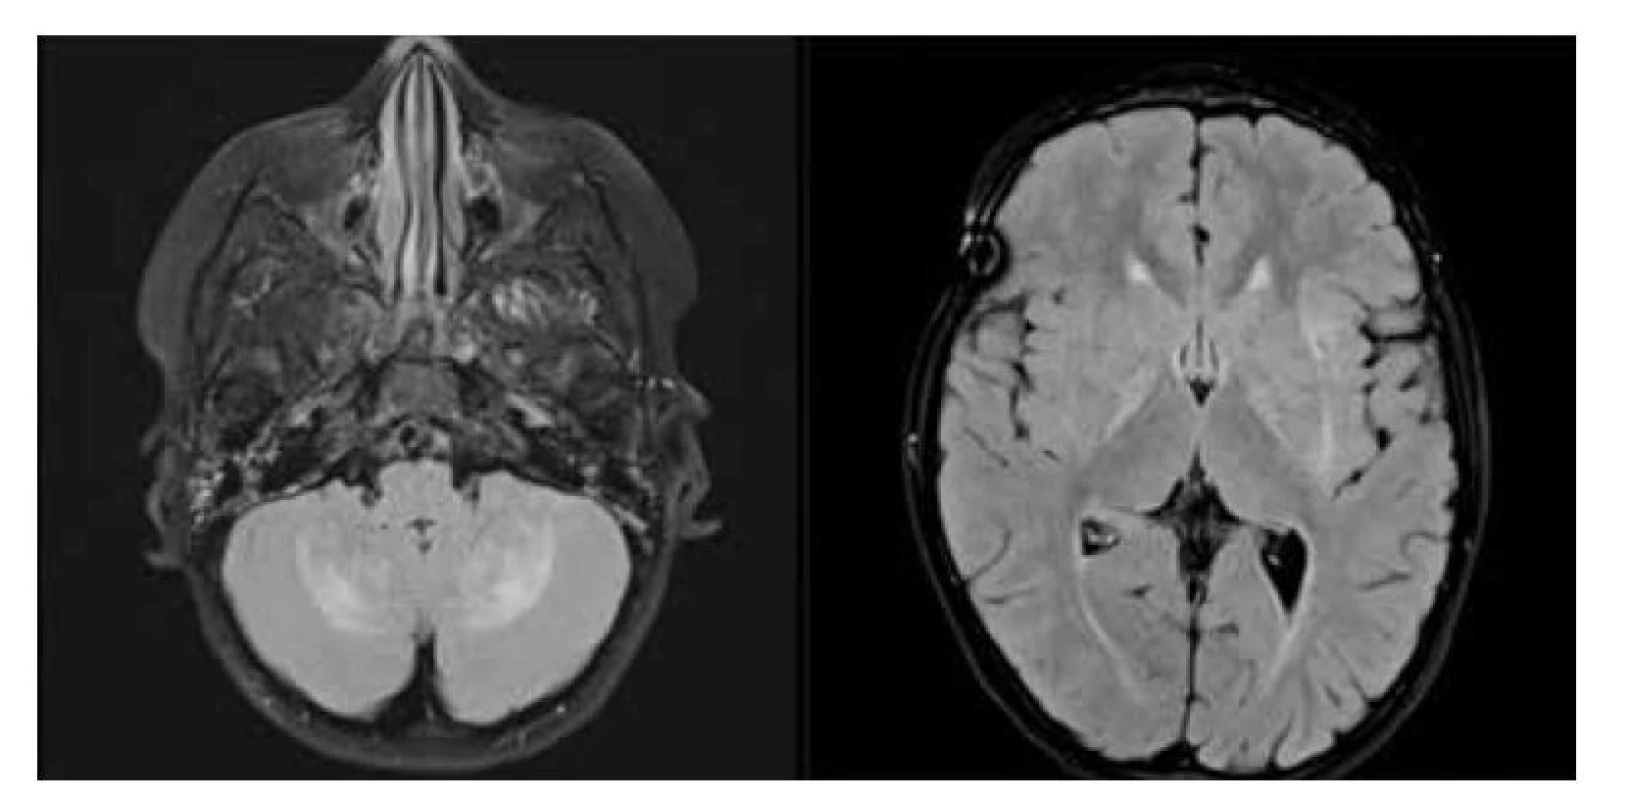 Neurodegenerace při LCH: a) MR scan – FLAIR sekevence v axiální rovině, hyperintenzní
léze mozečkových hemisfér a nuclei caudati bilat., b) MR scan – FLAIR sekevence
v axiální rovině, hyperintezní léze v bazálních gangliích oboustranně.<br>
Fig. 6. LCH neurodegeneration: a) MR FLAIR scan in axial plane, bilateral symmetric parenchymal
lesions of the cerebellum in the dentate nuclei, b) MR FLAIR scan in axial plane, bilateral
hyperintense lesions of the basal ganglia.